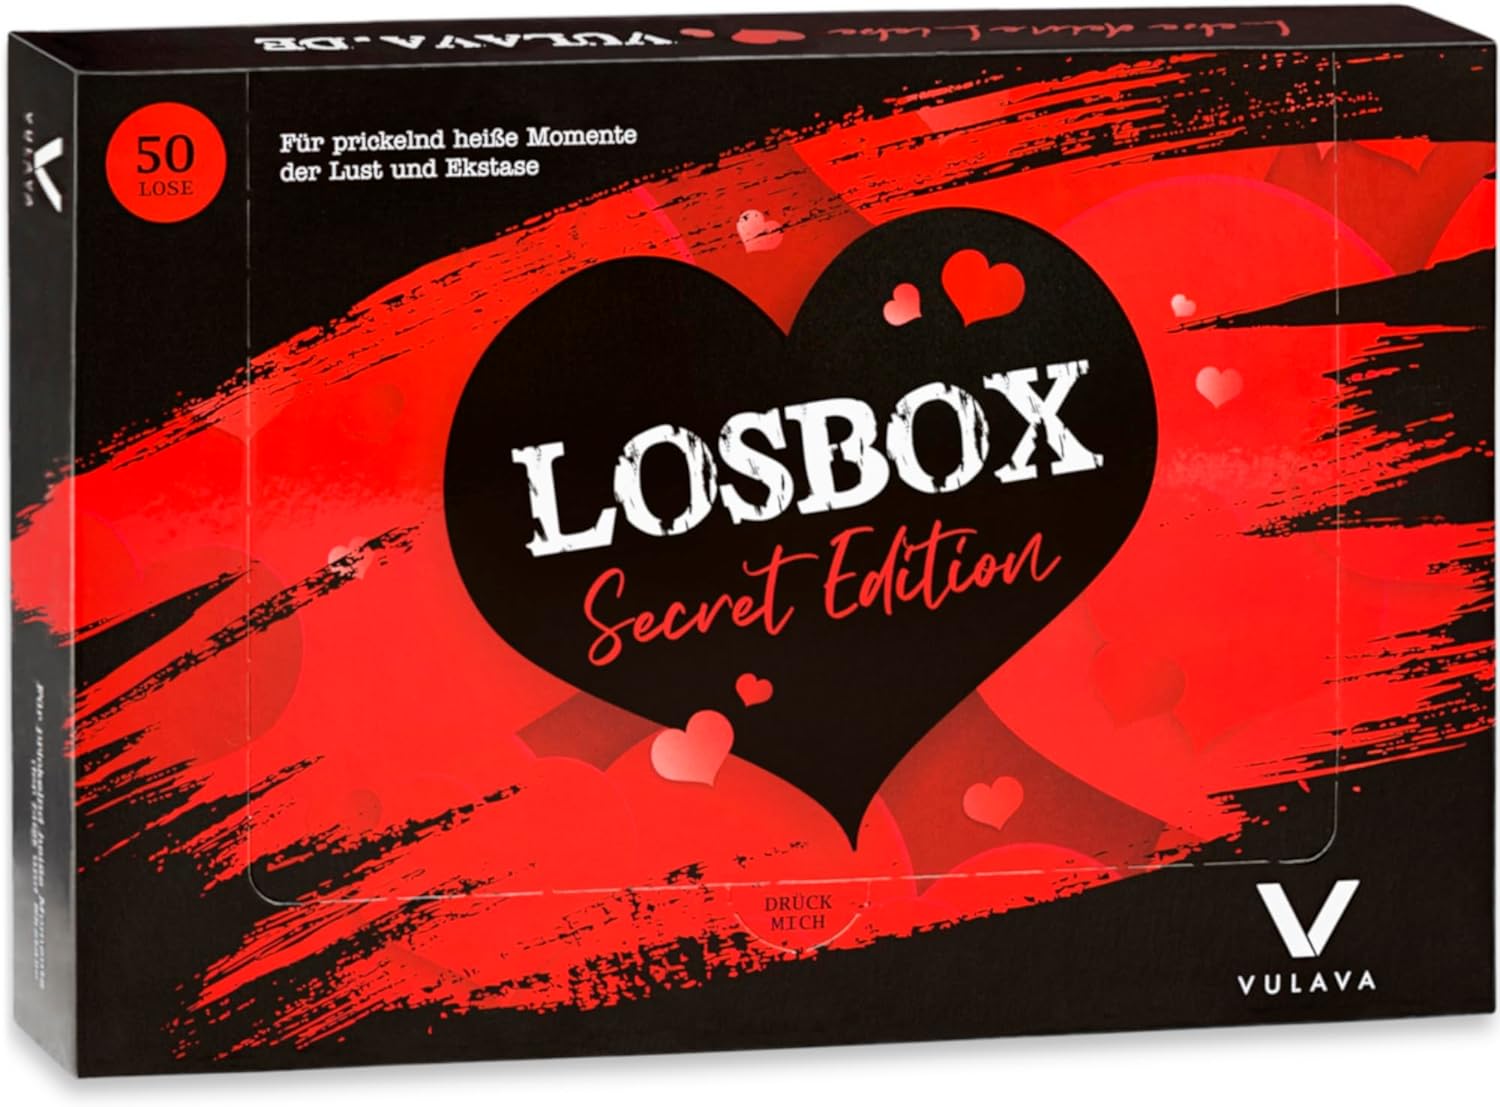 Erotische Losbox für Paare - Secret Edition